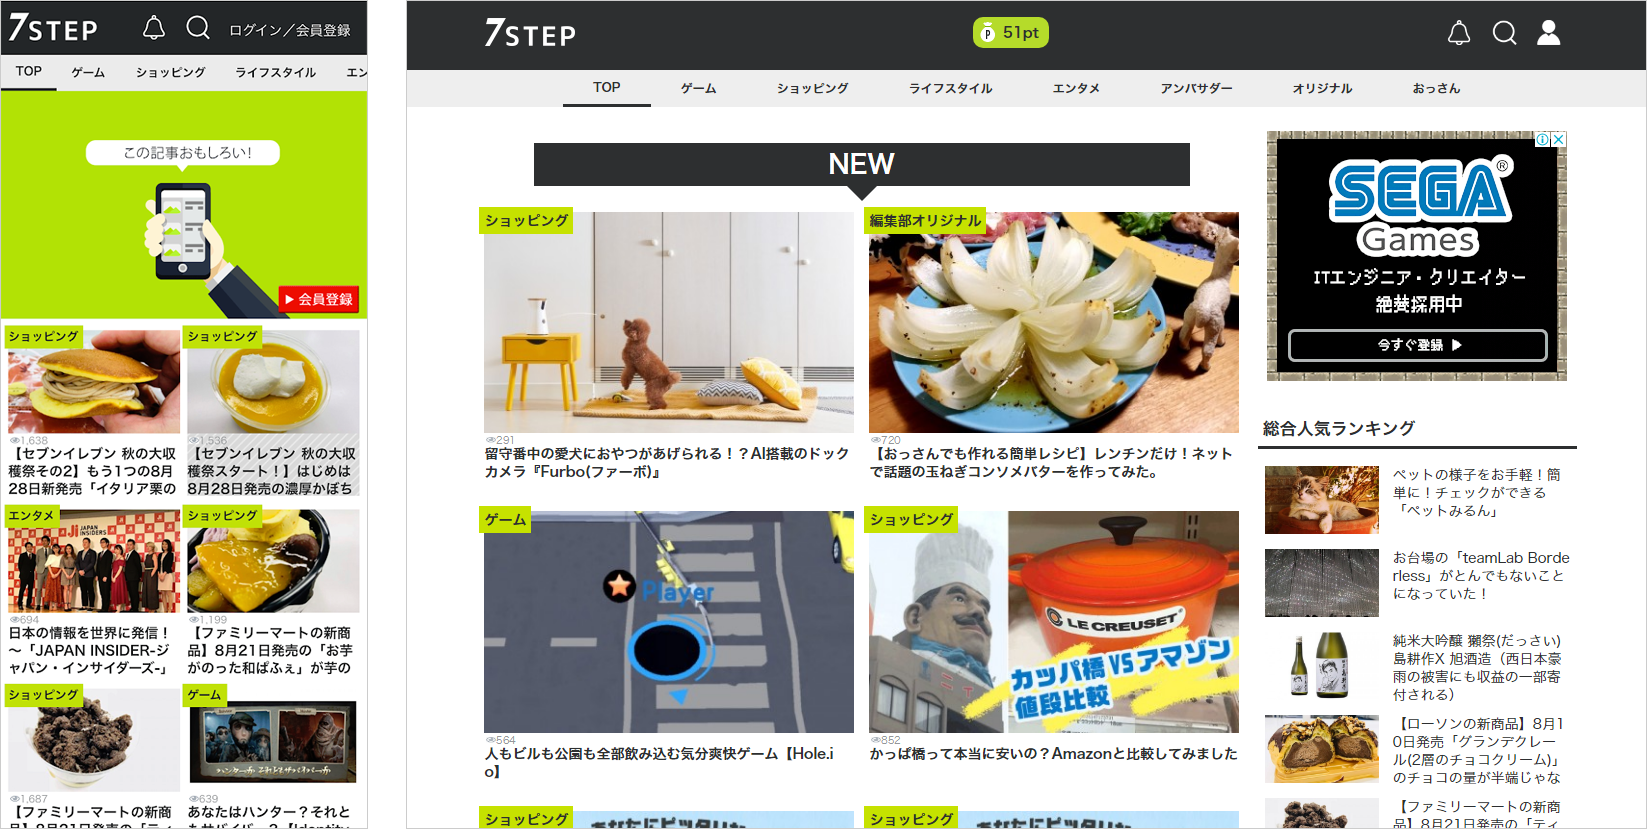 レビューサイト「7STEP」